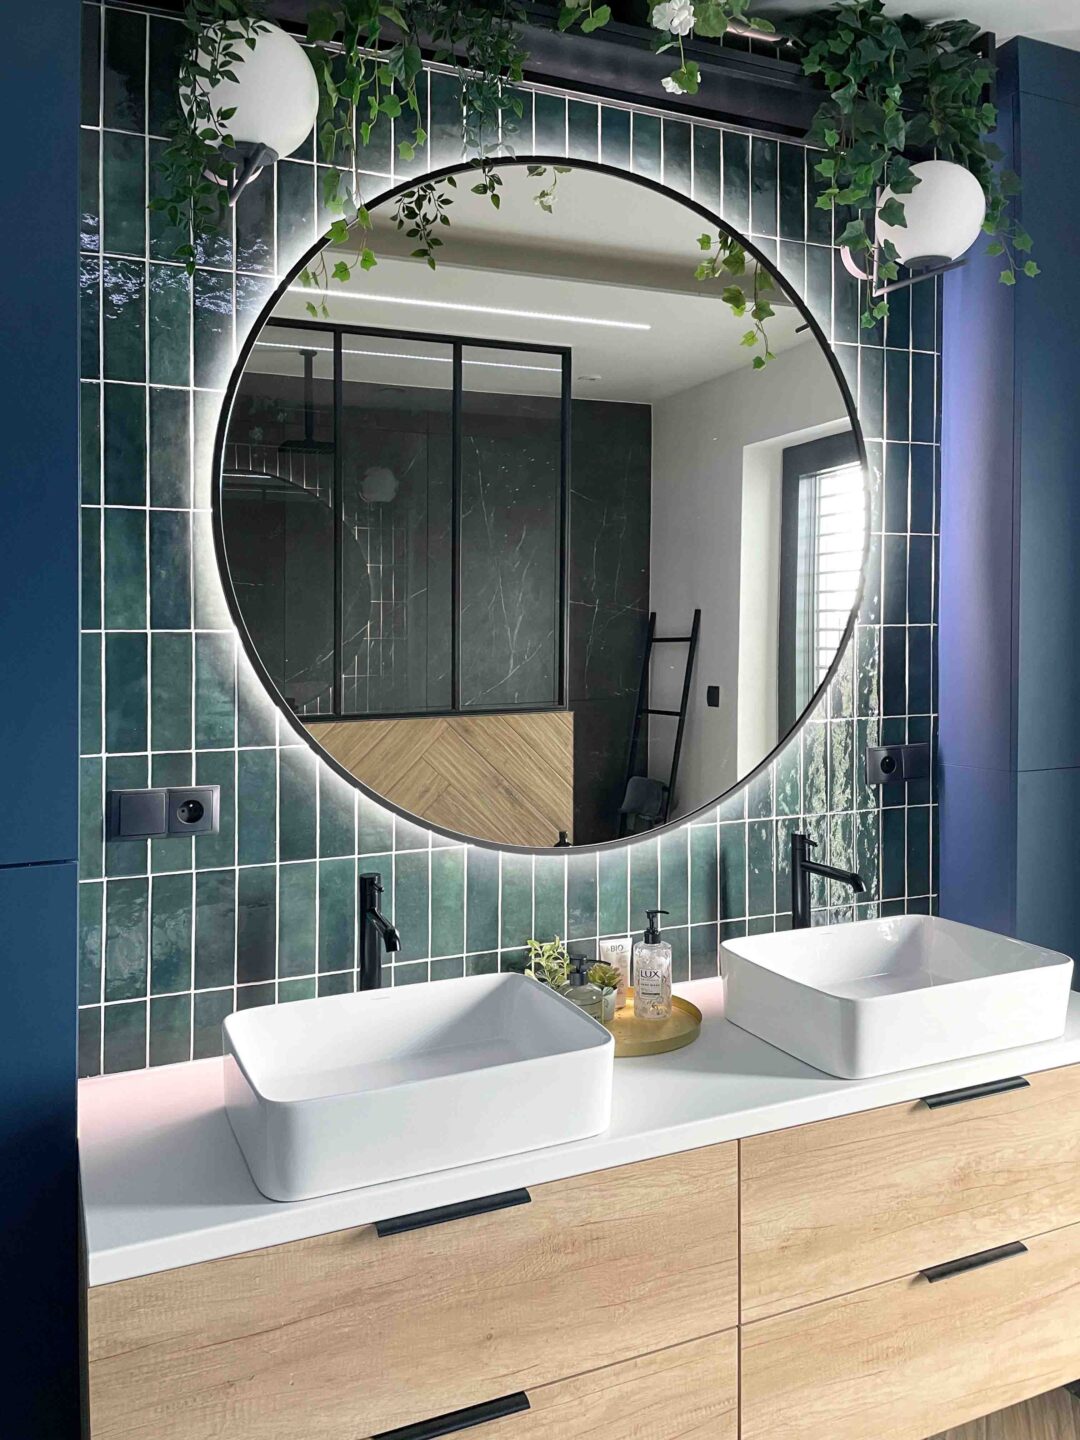 okrągłe lustro w czarnej ramie w łazience nad umywalką z zielonymi płytkami zellige